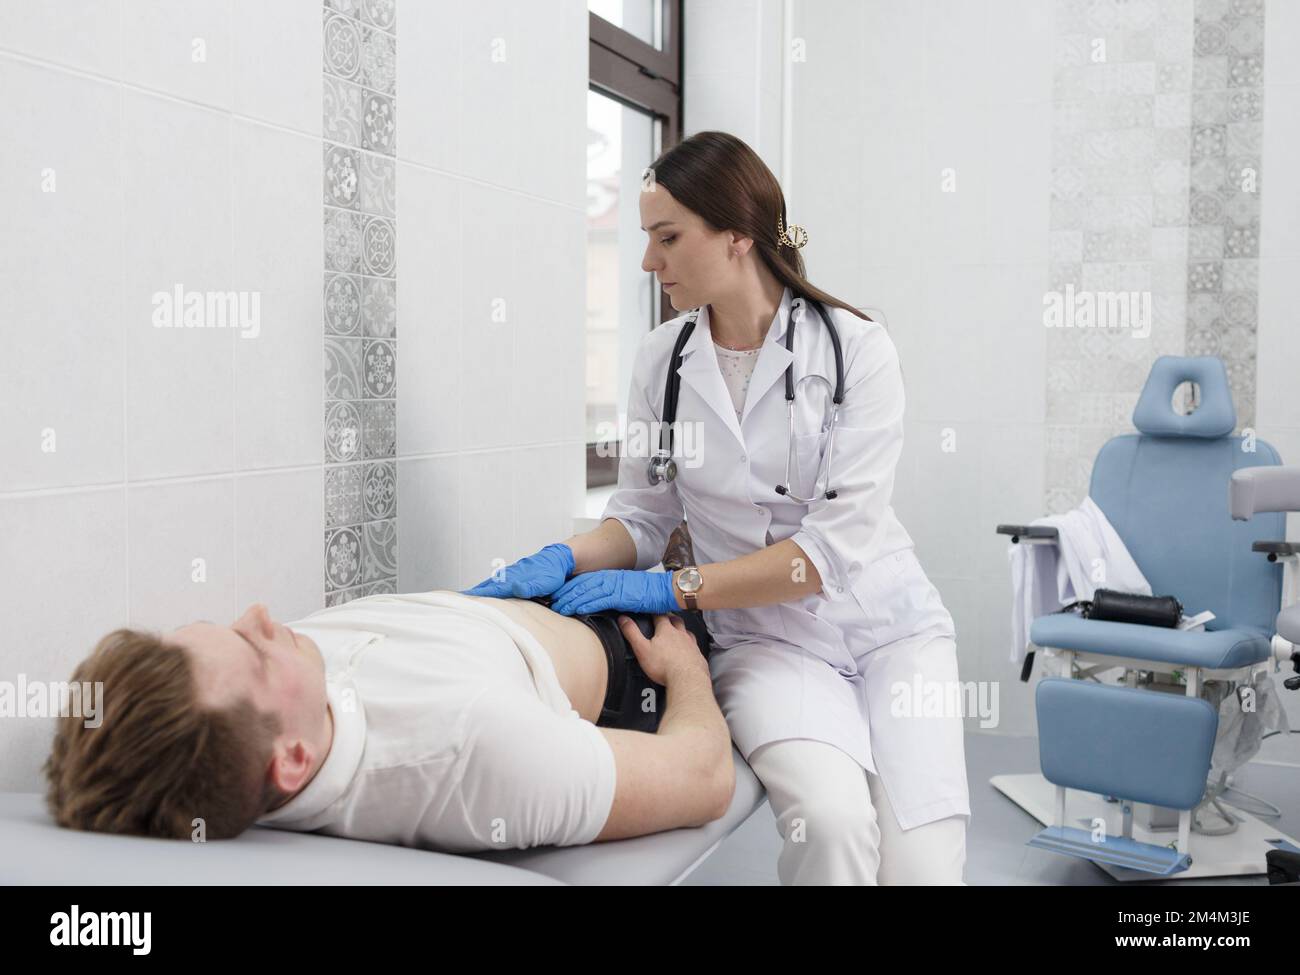 Eine fokussierte, junge Ärztin mit abdominaler Palpation bei einem schmerzhaften jungen Mann mittleren Alters. Stockfoto